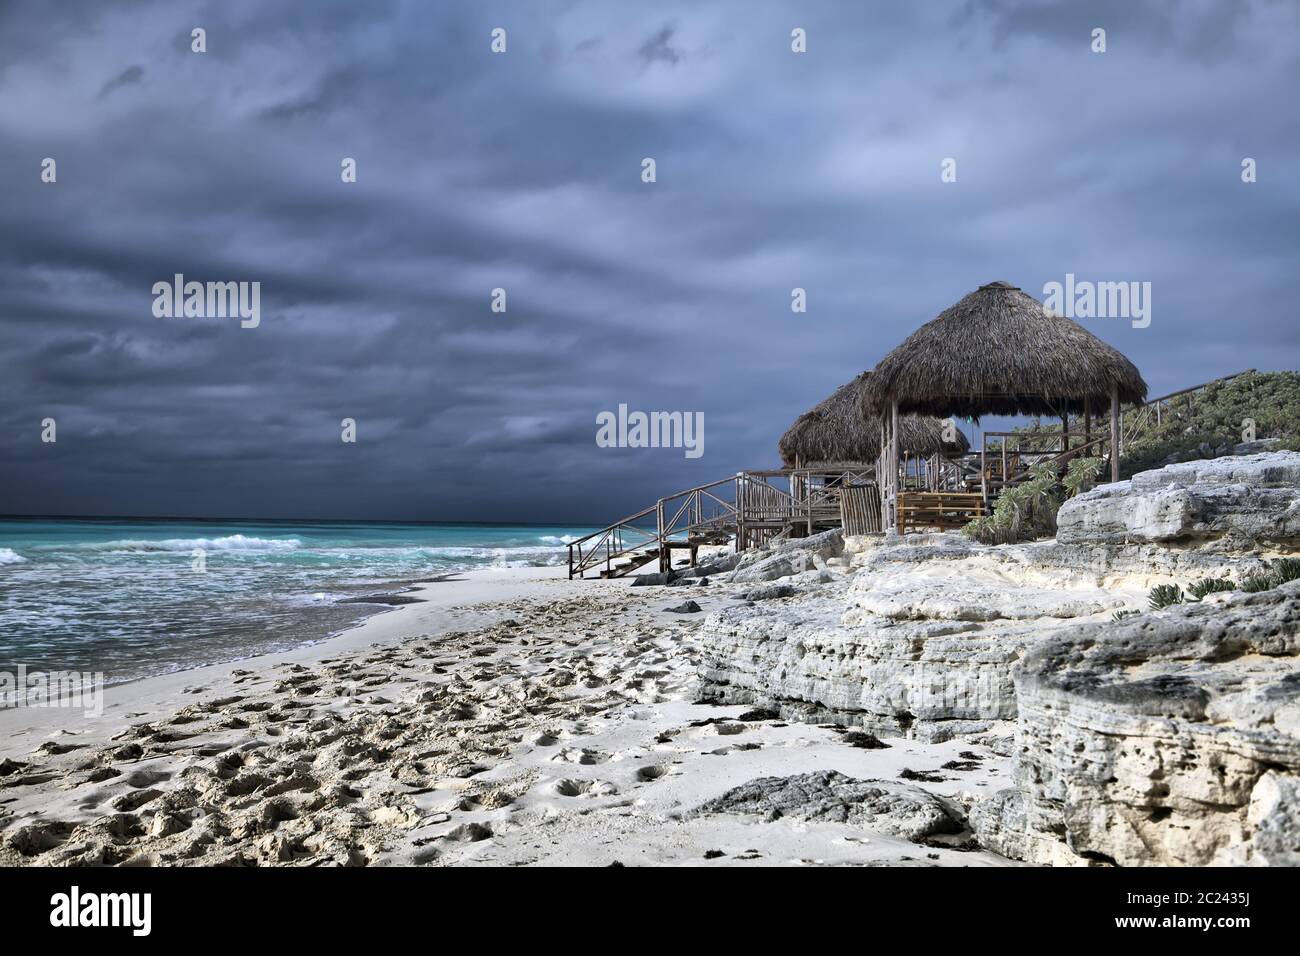 Wooden hut on the seashore. Cayo Largo island, Cuba Stock Photo